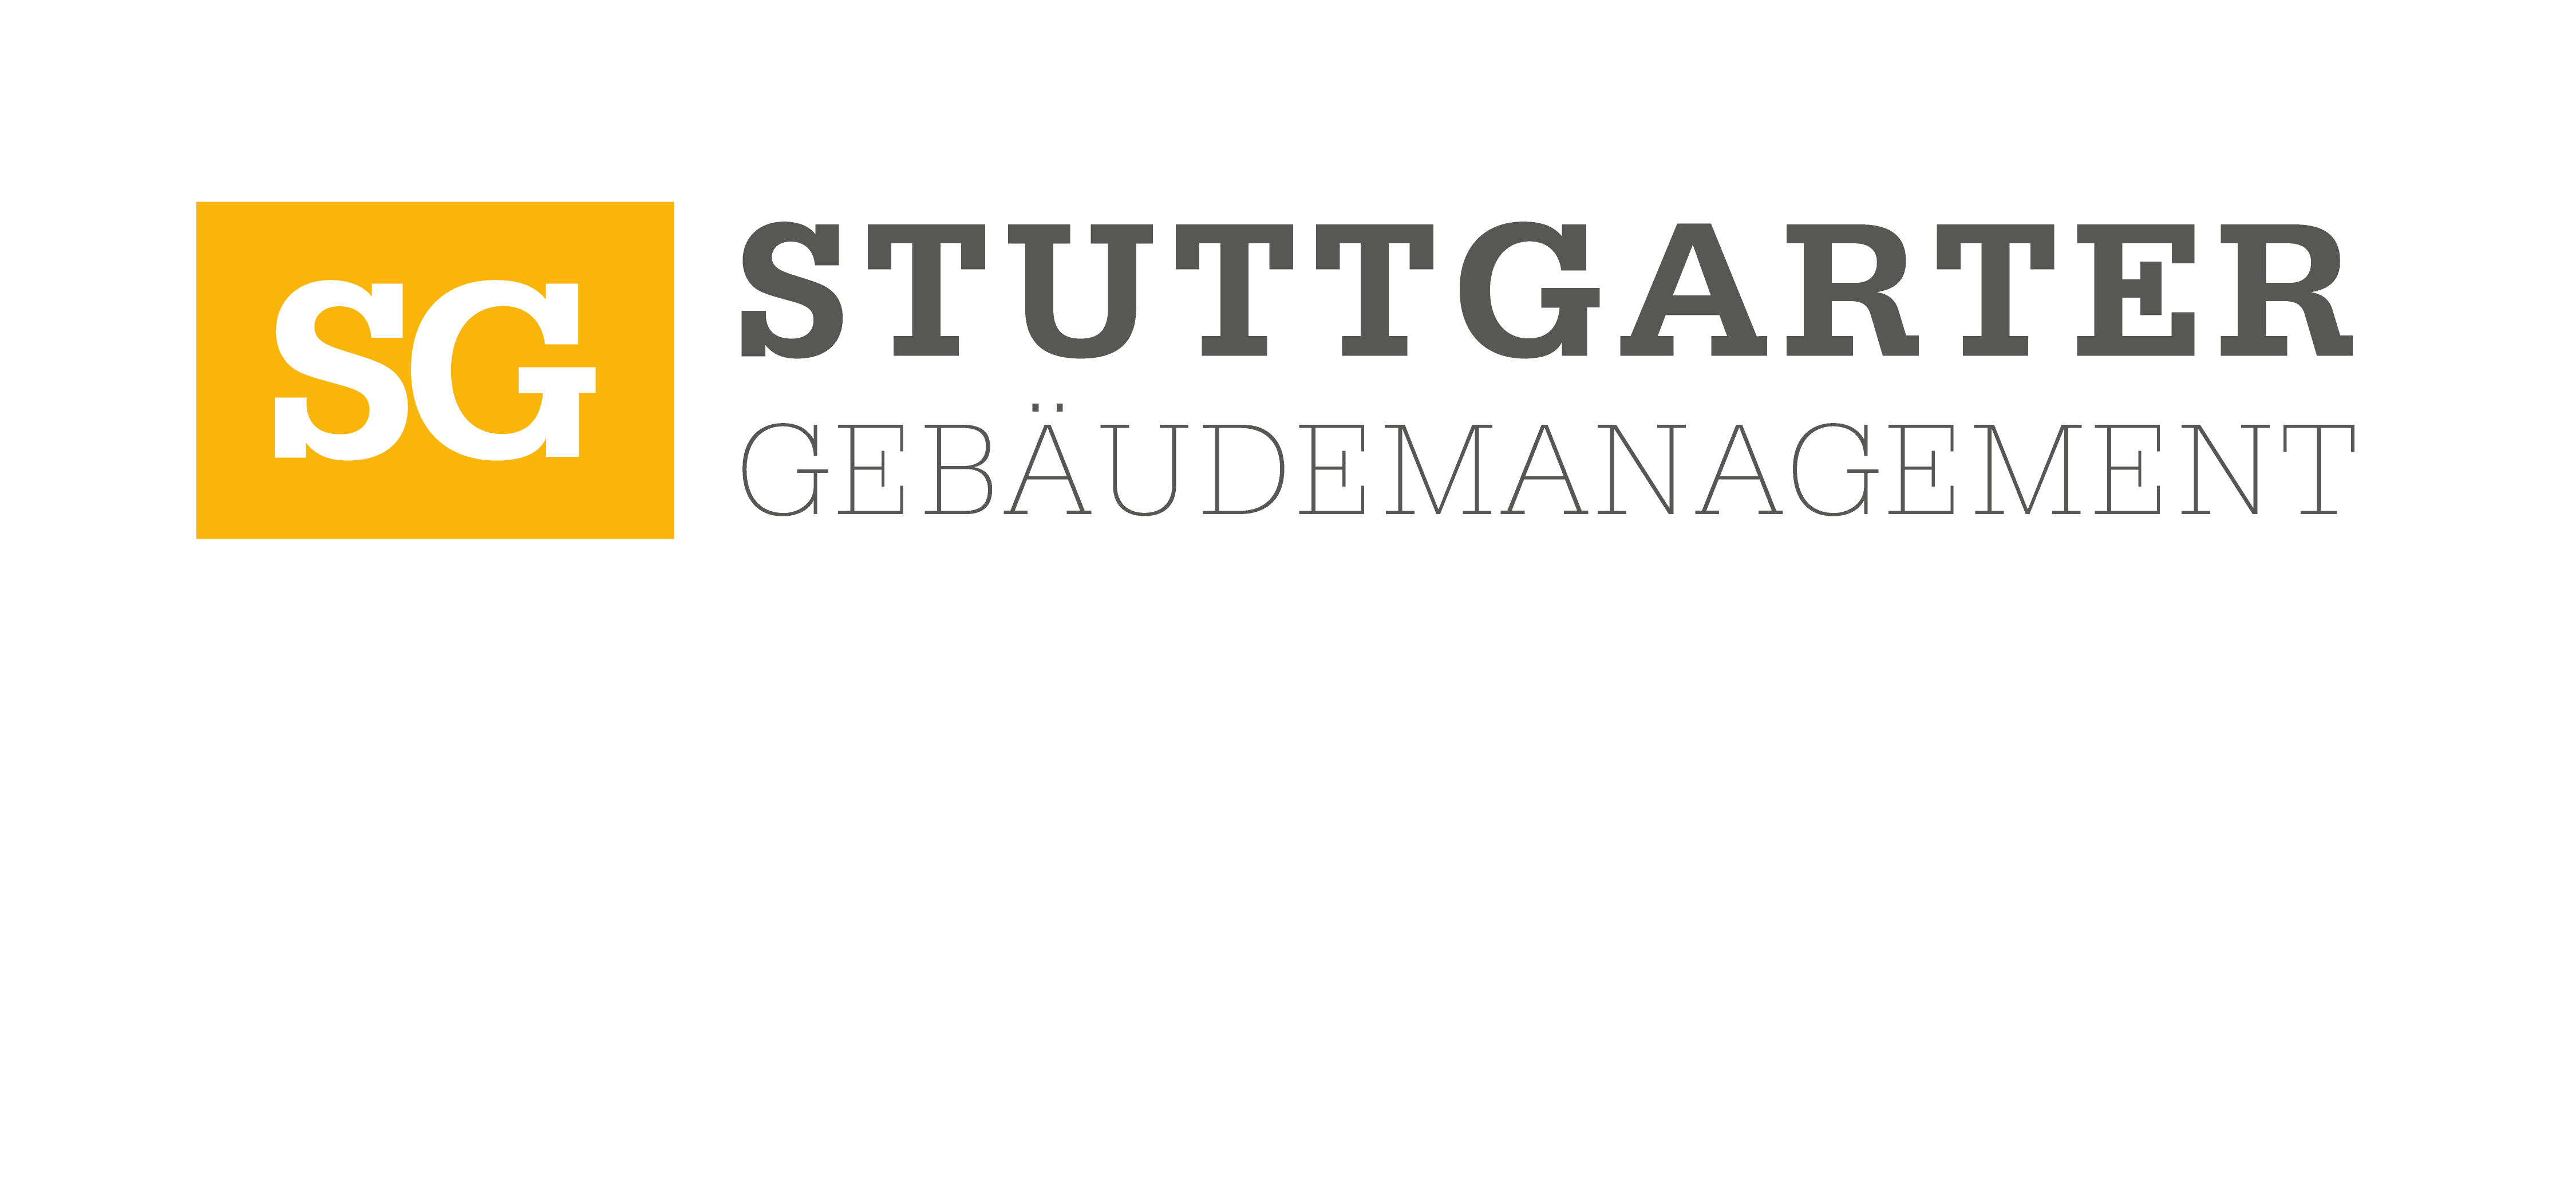 
Das Unternehmen Hausverwaltung – Stuttgarter Gebäudemanagement